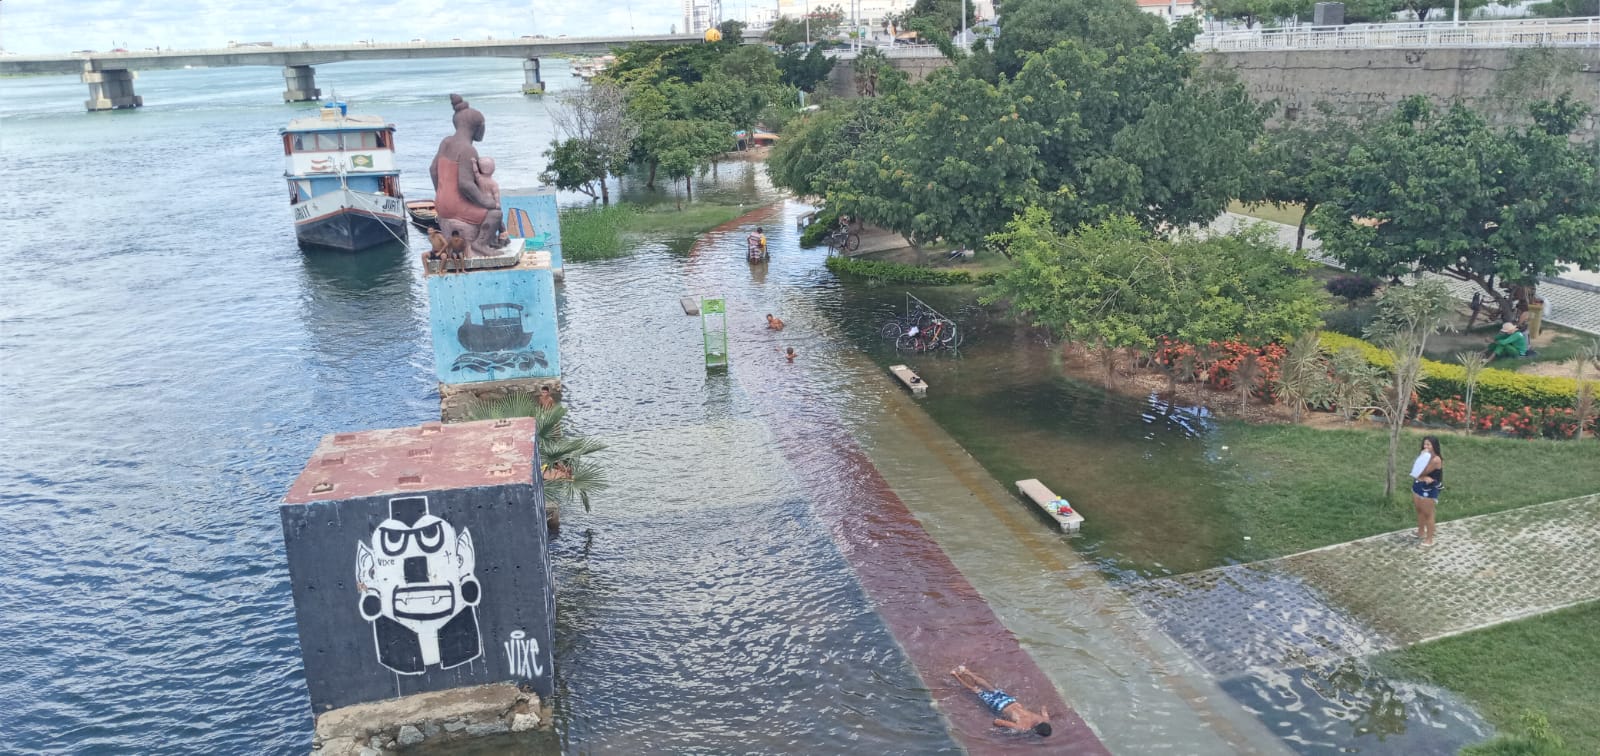 Com rio cheio, banhistas aproveitam área inundada na Orla II de Juazeiro; cuidados devem ser redobrados